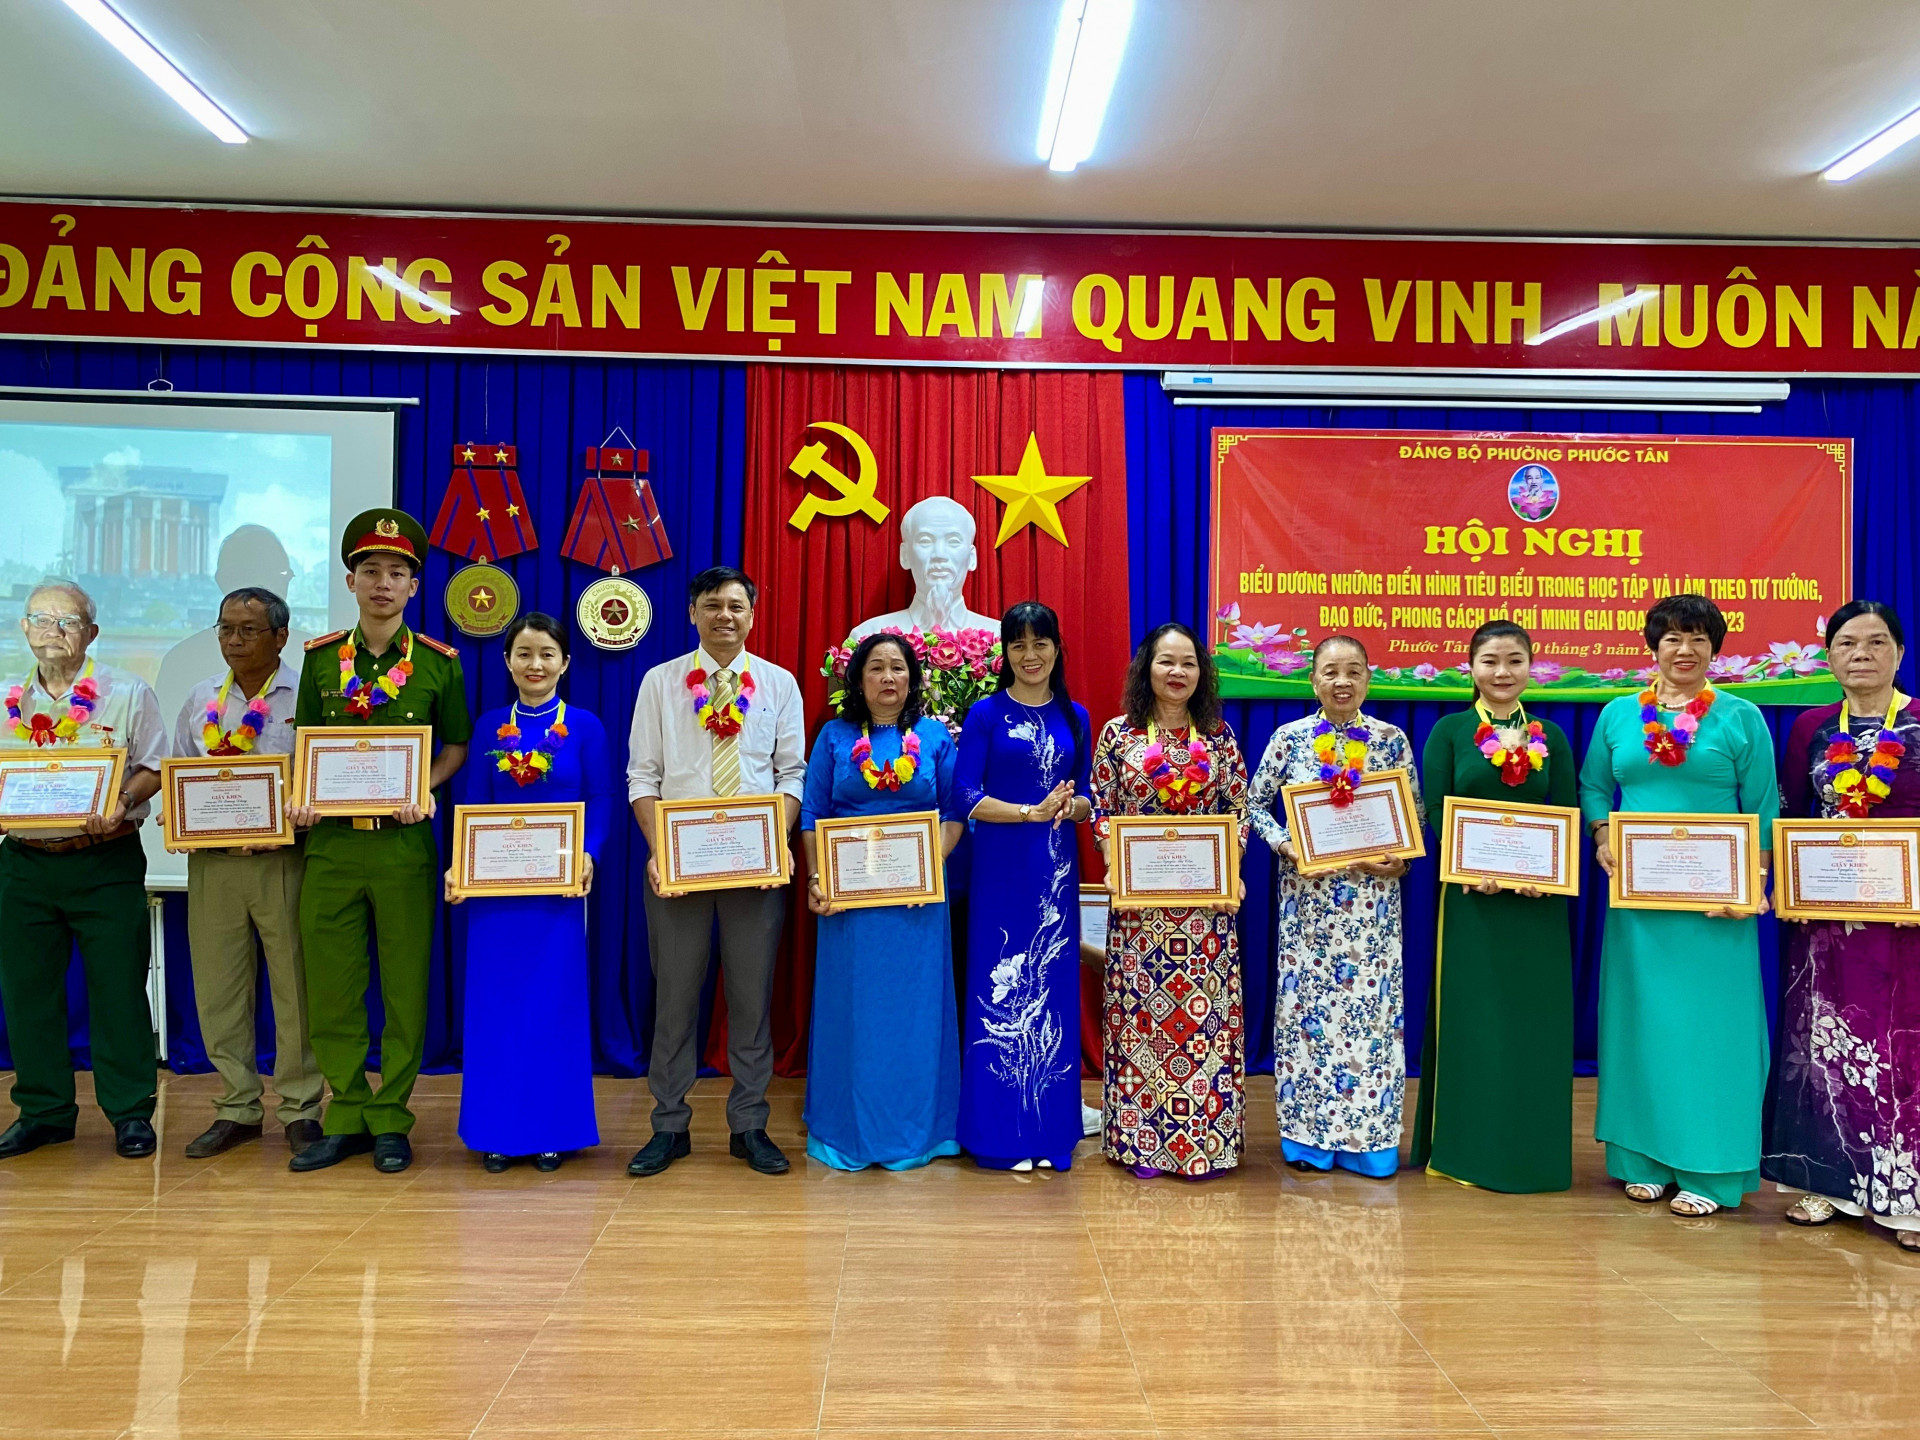 12 cá nhân đã có thành tích trong “Học tập và làm theo tư tưởng, đạo đức, phong cách Hồ Chí Minh giai đoạn 2020-2023